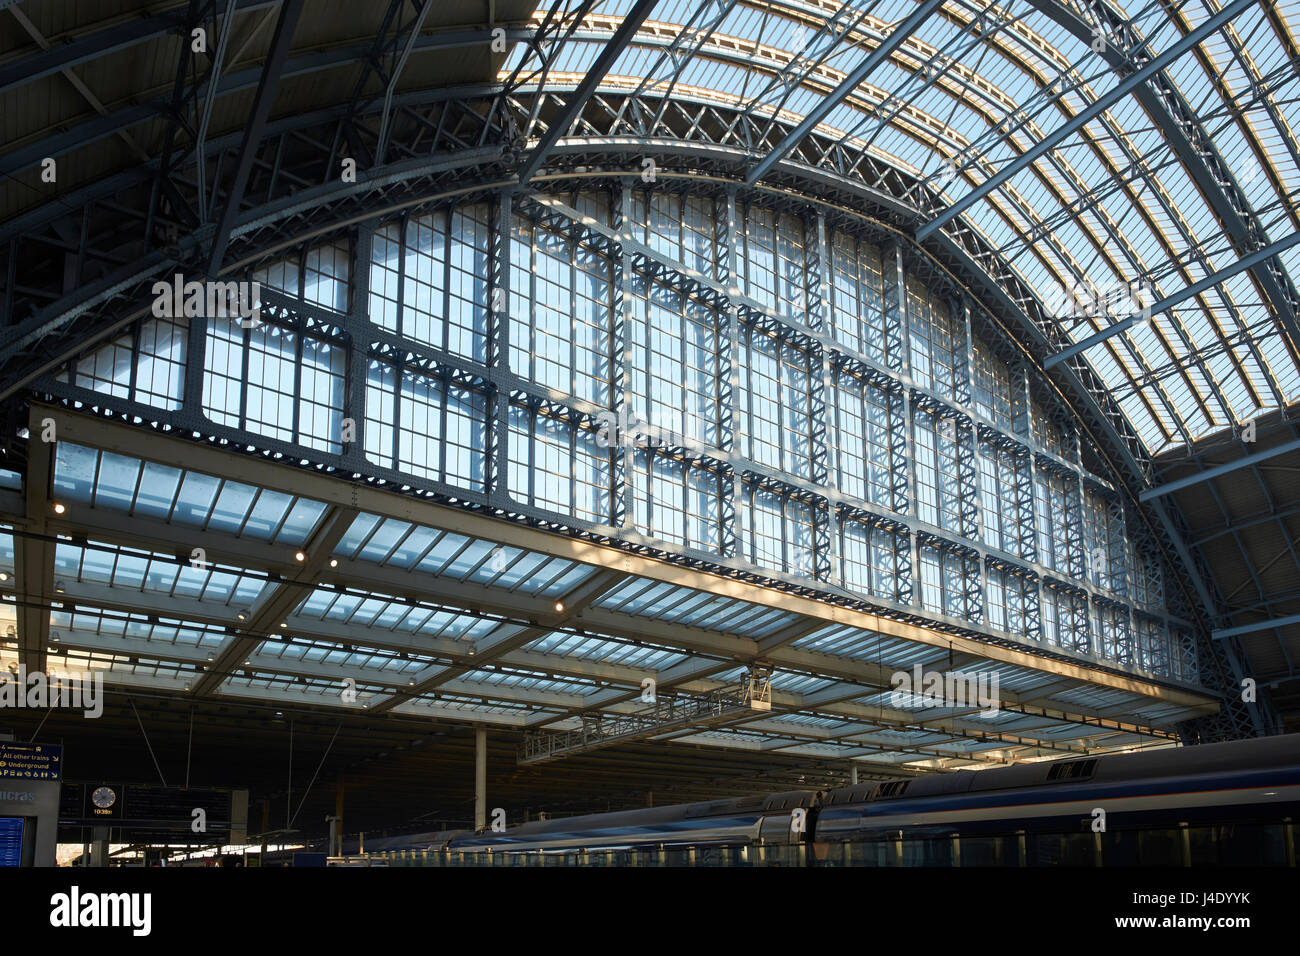 La stazione di St Pancras, London. Il trainshed, progettato da William Barlow per la ferrovia Midland nel 1860s. Northern gable fine. Foto Stock